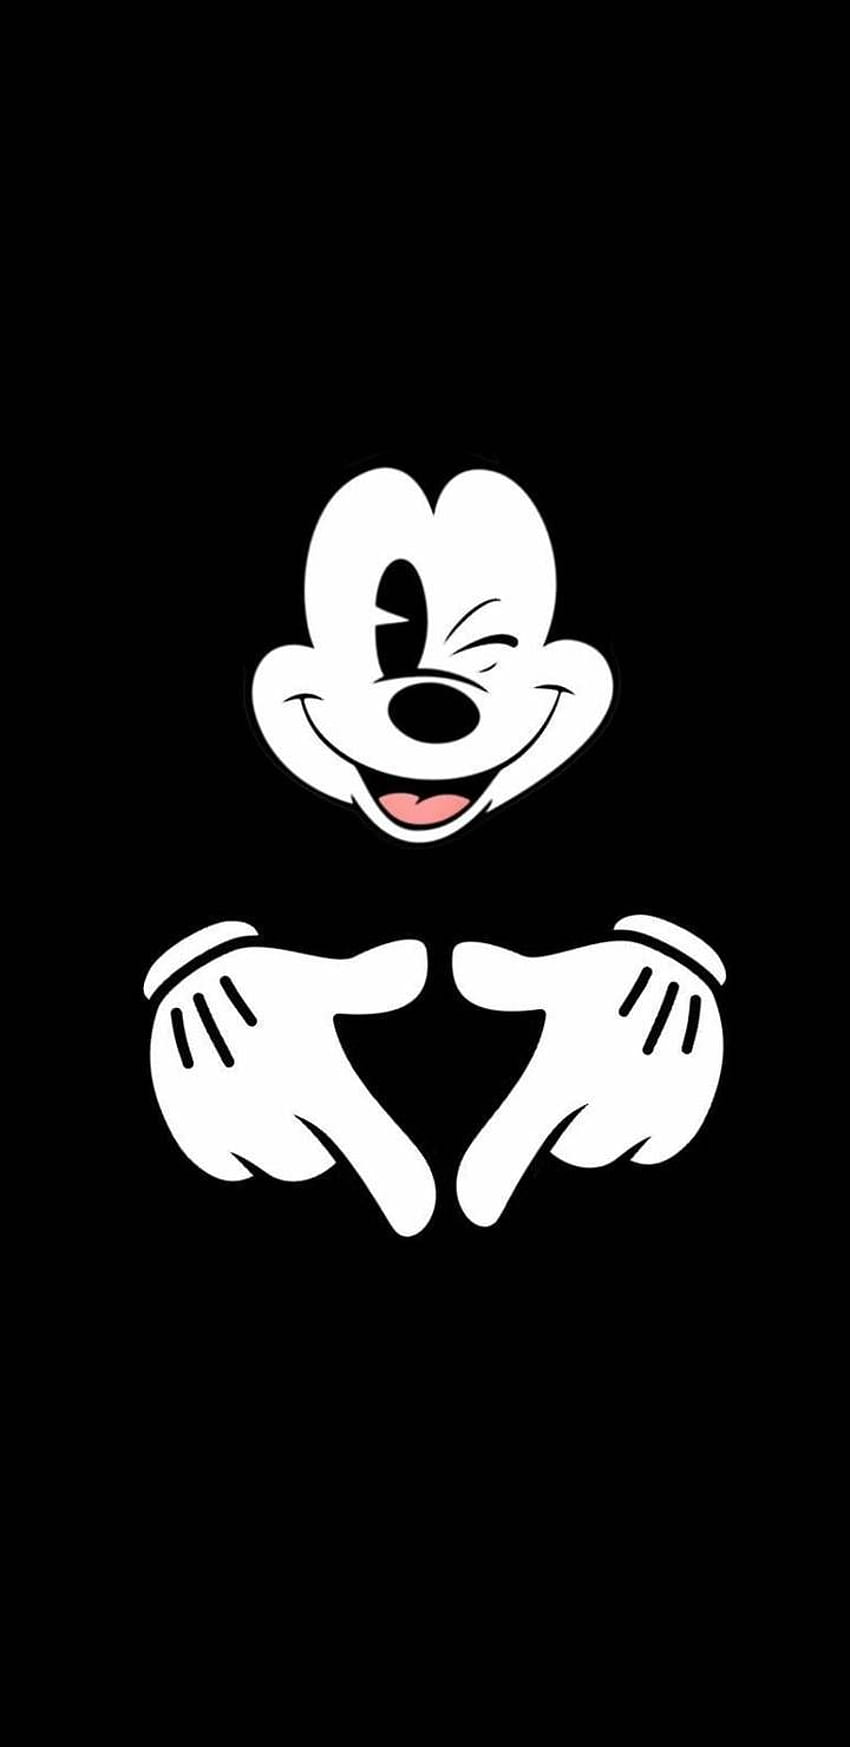 iPhone do Mickey Mouse - , Fundo do iPhone do Mickey Mouse no morcego, Minnie Mouse preta Papel de parede de celular HD